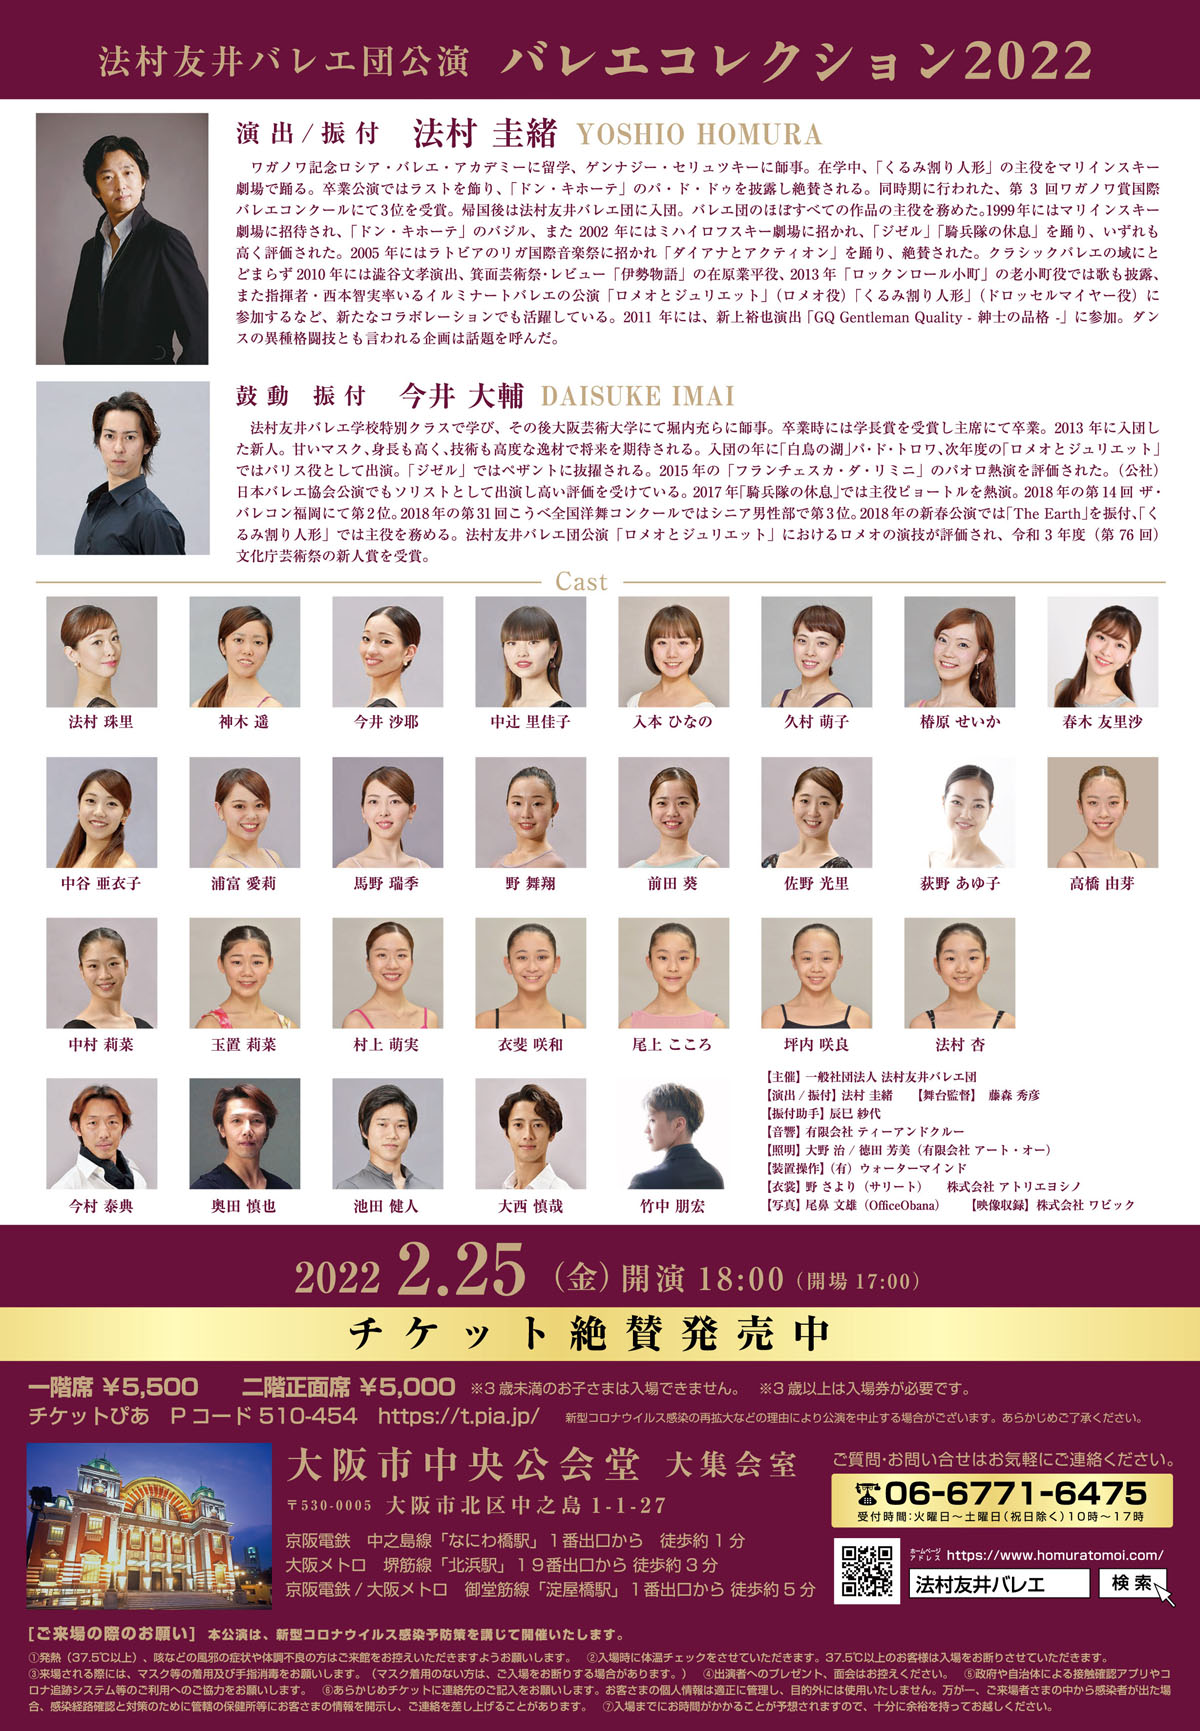 2022年2月25日（金）法村友井バレエ団　公演　『バレエ・コレクション２０２２』